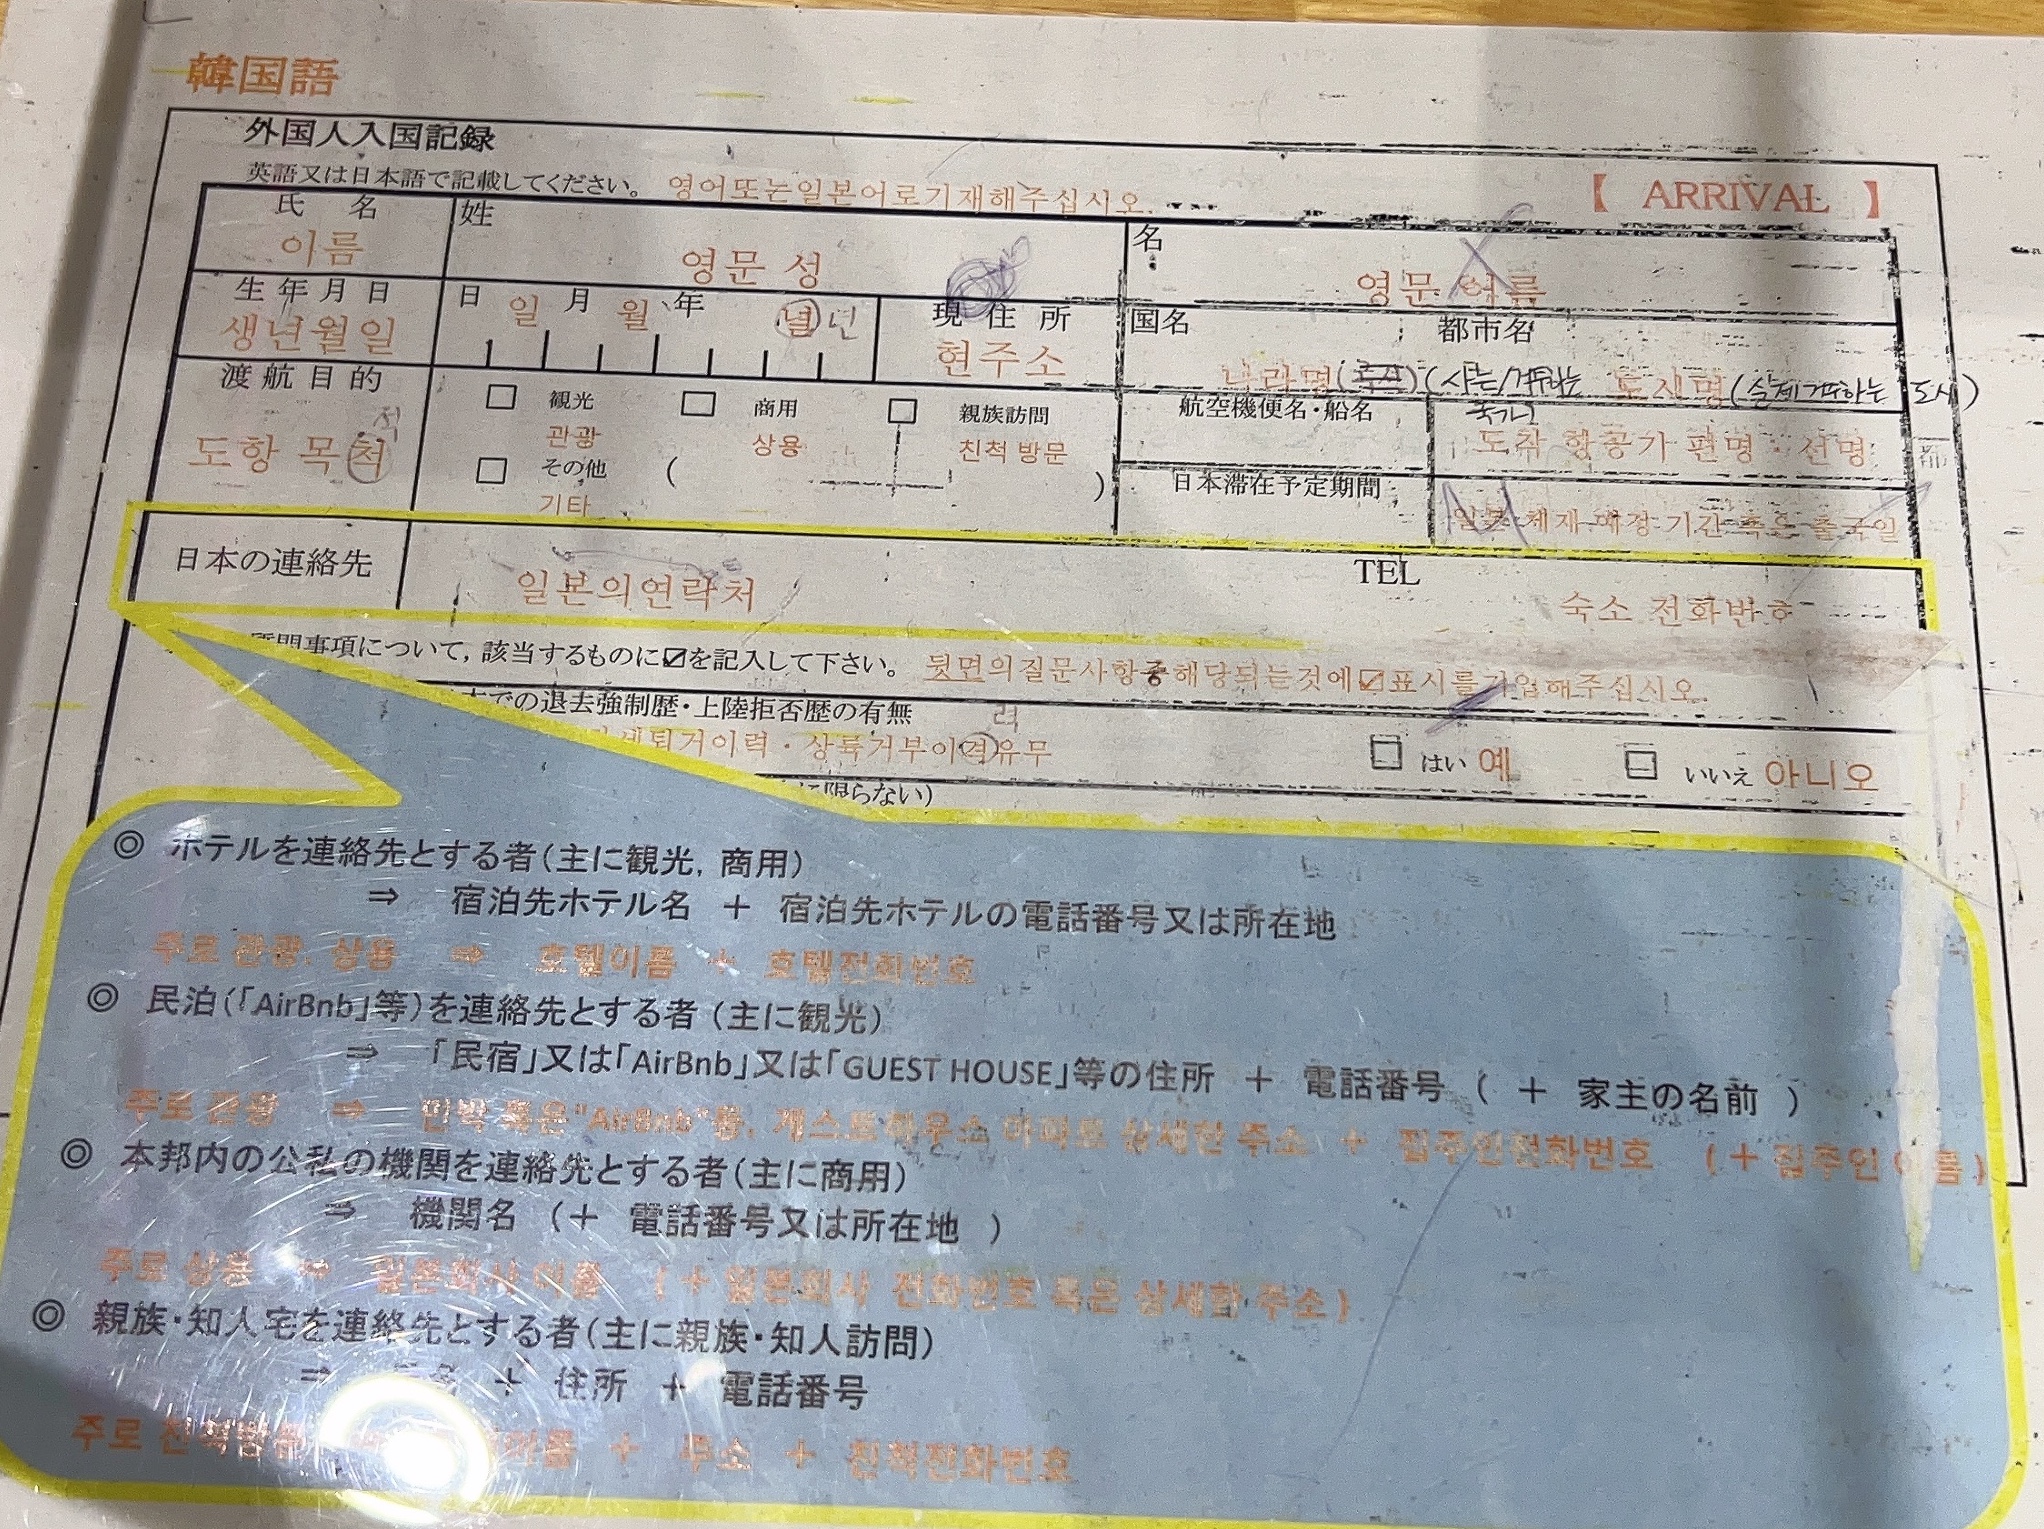 일본 외국인 입국기록 신고서 작성방법